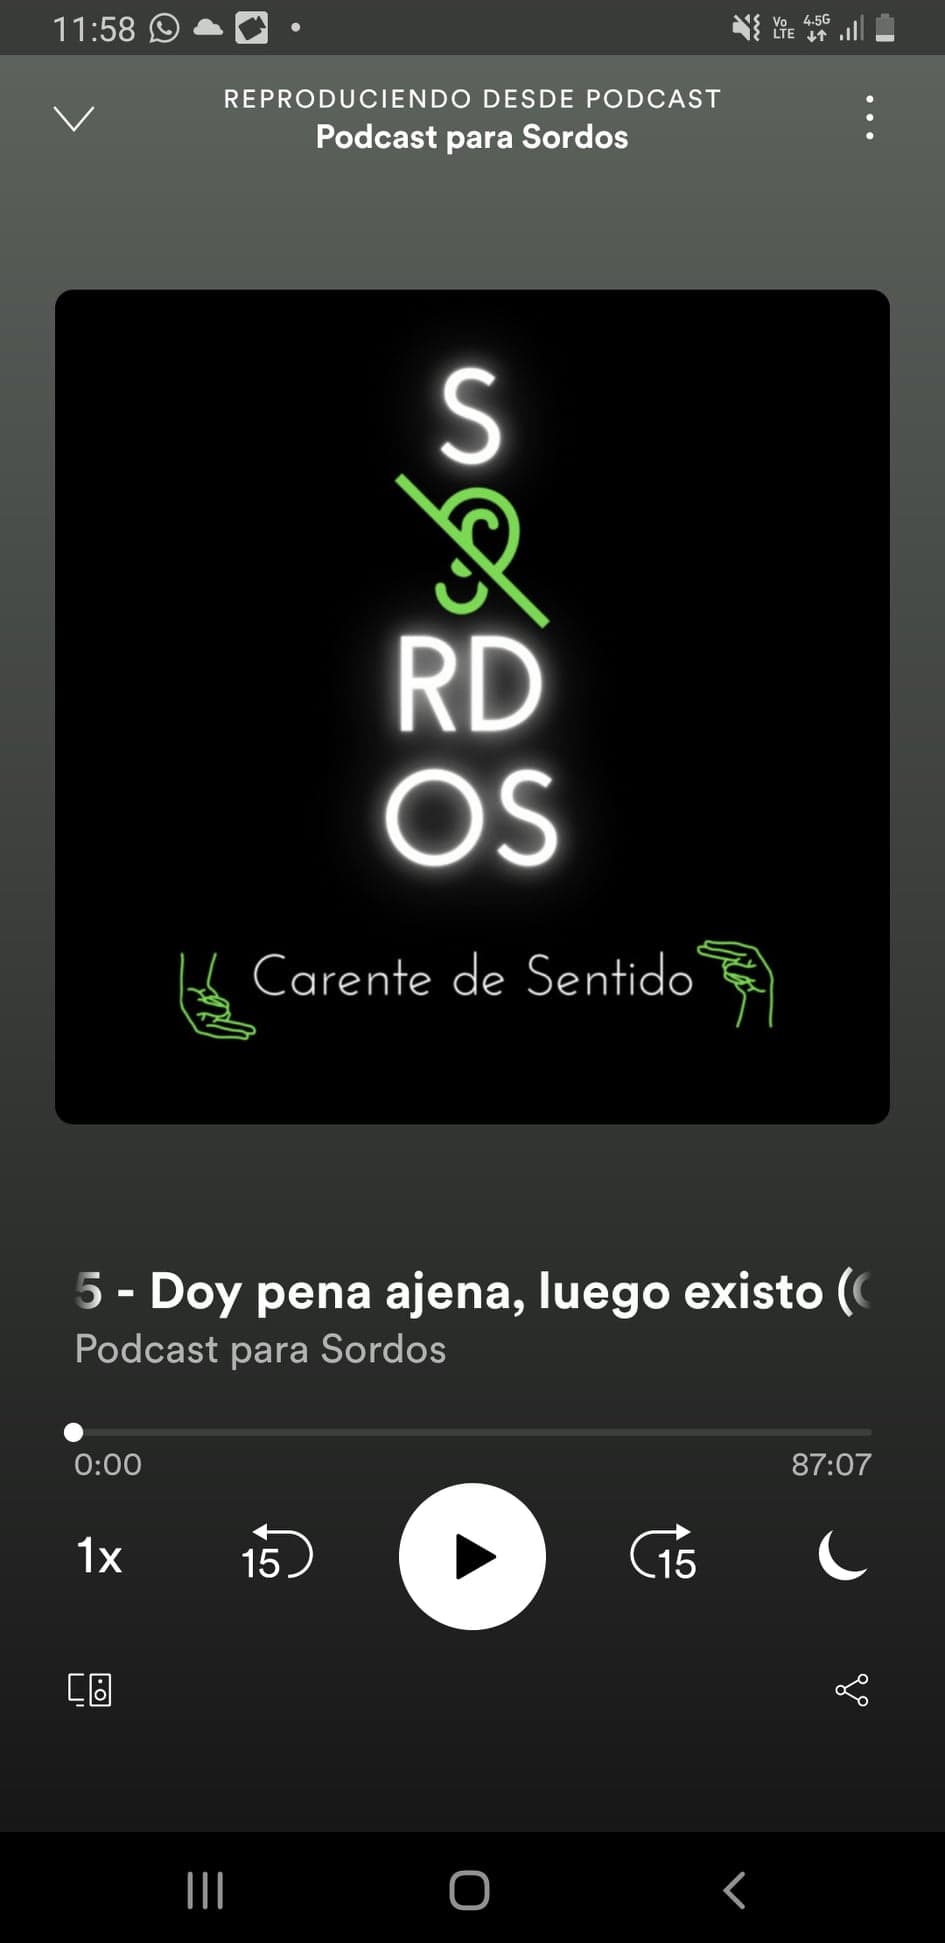 Podcast para Sordos - Episodio 5